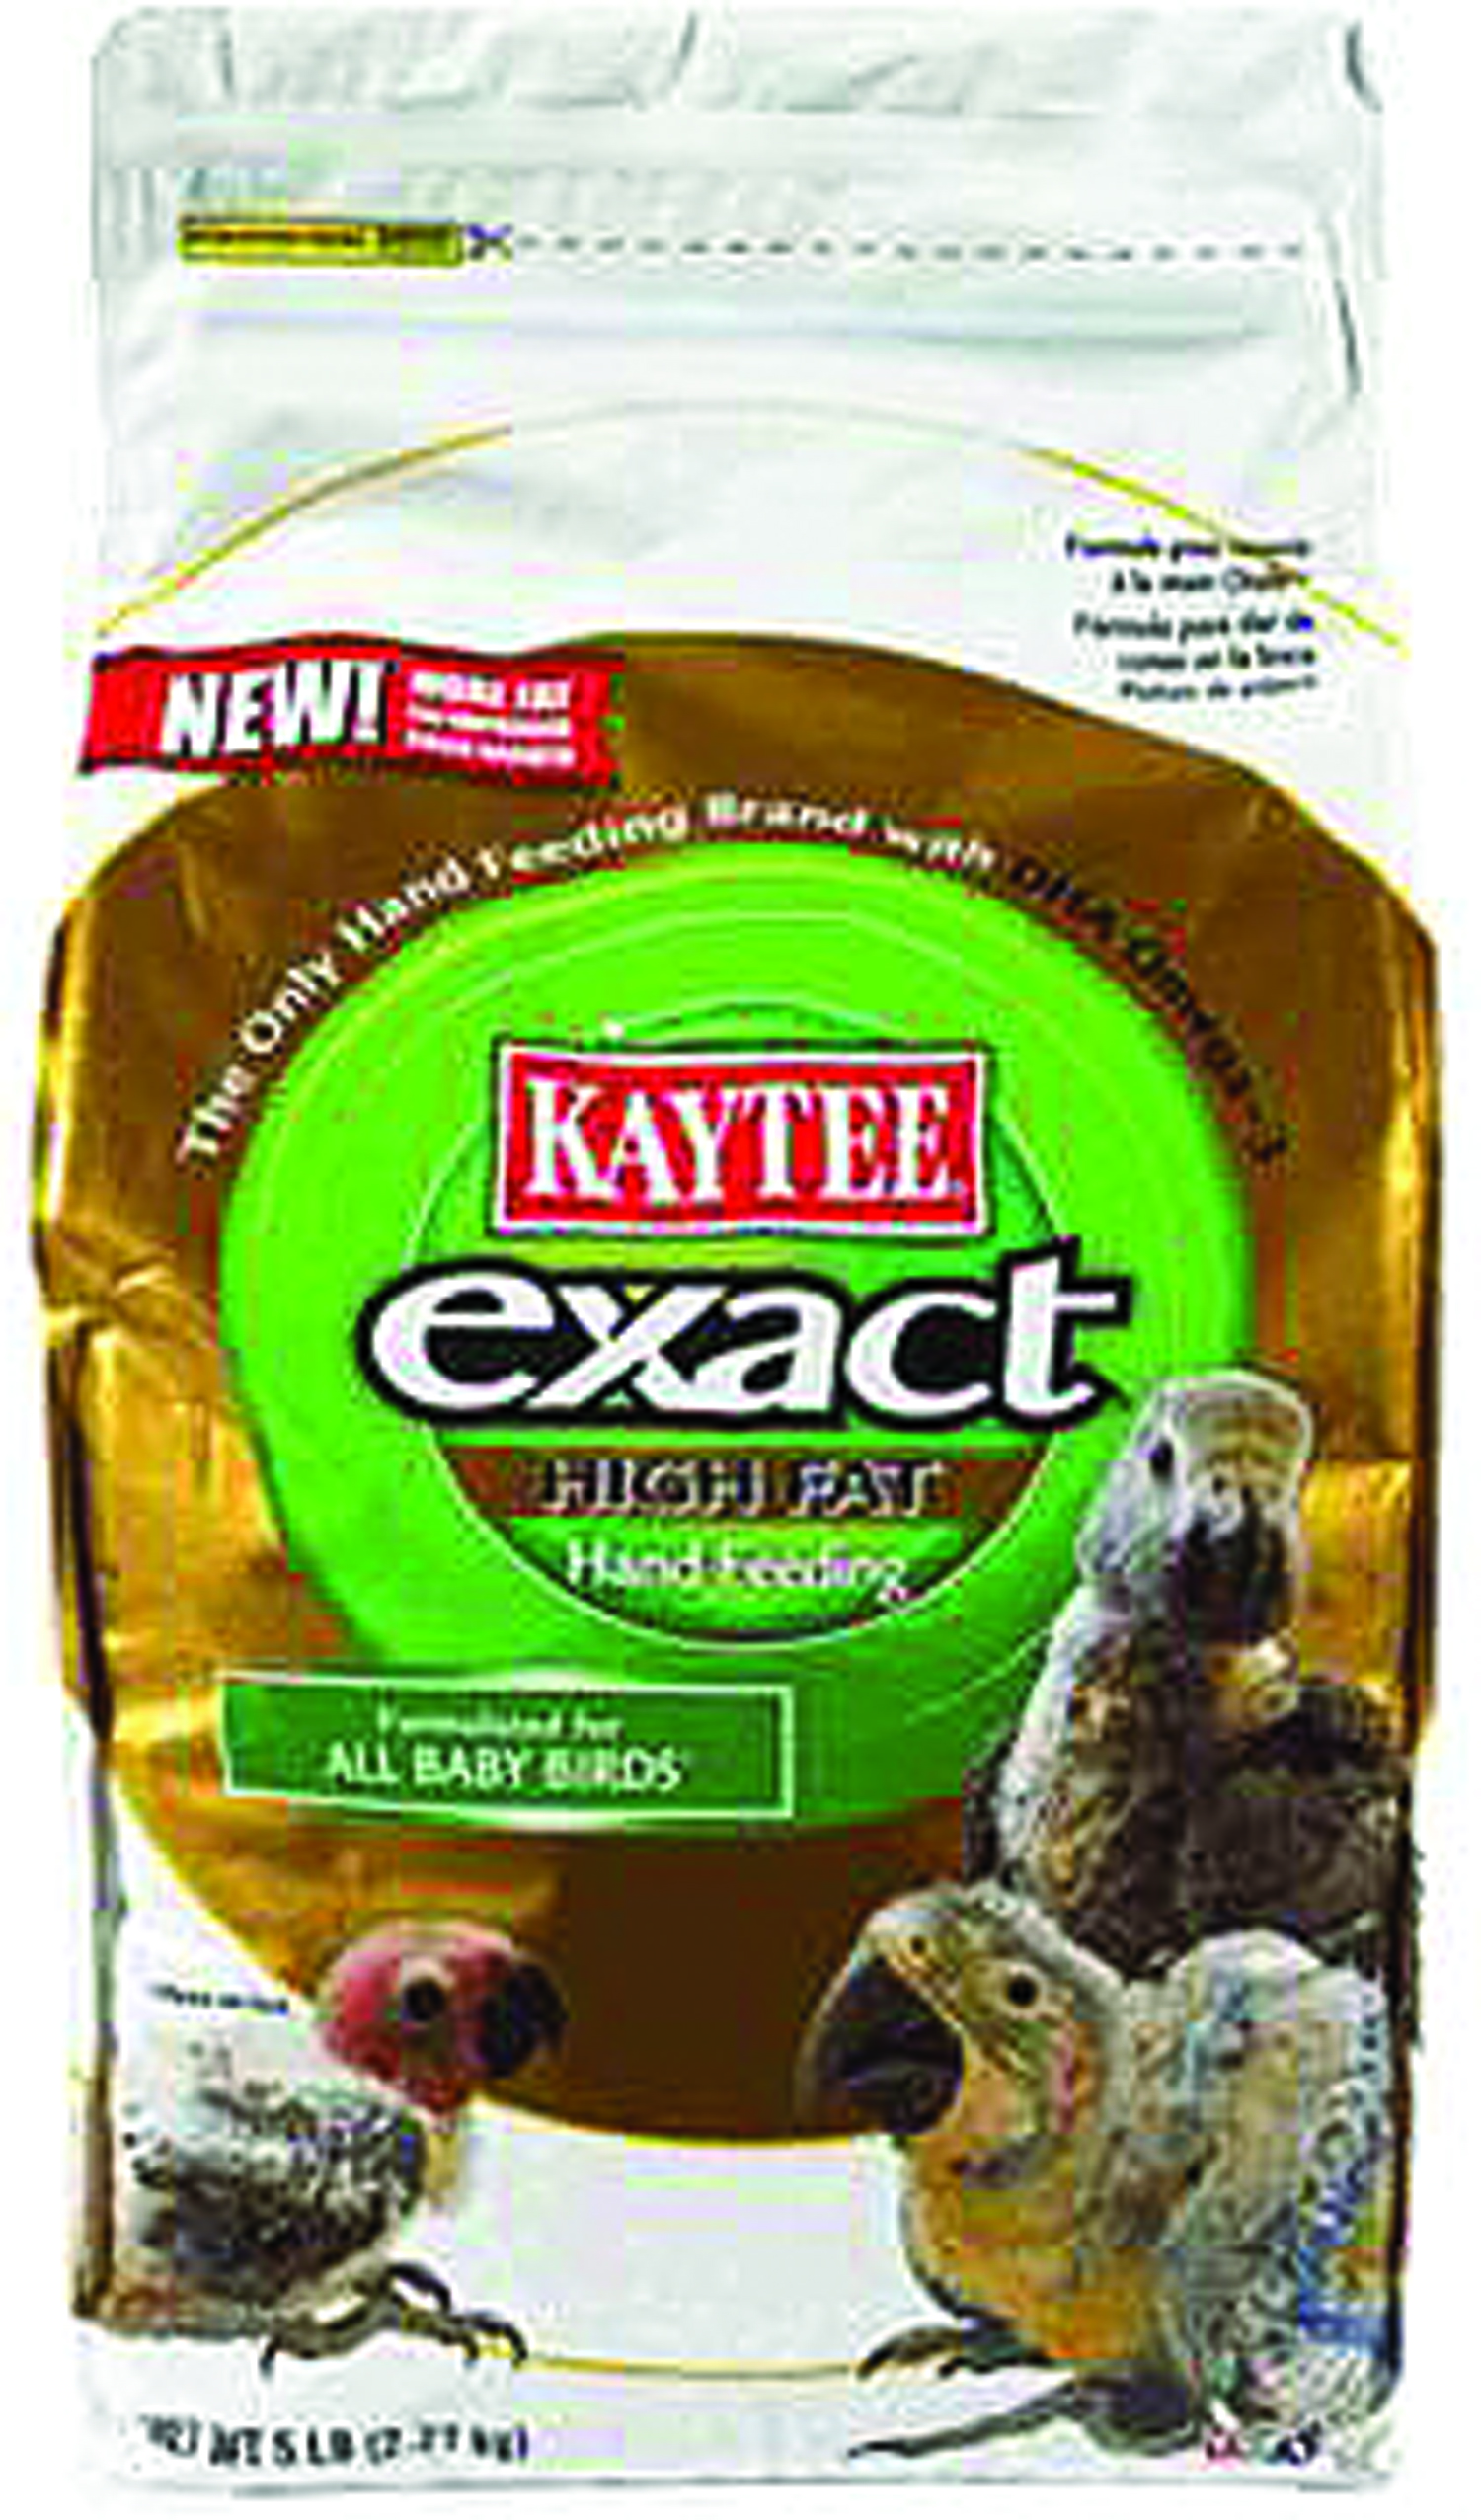 KAYTEE EXACT HANDFEEDING ULTRA HIGH FAT